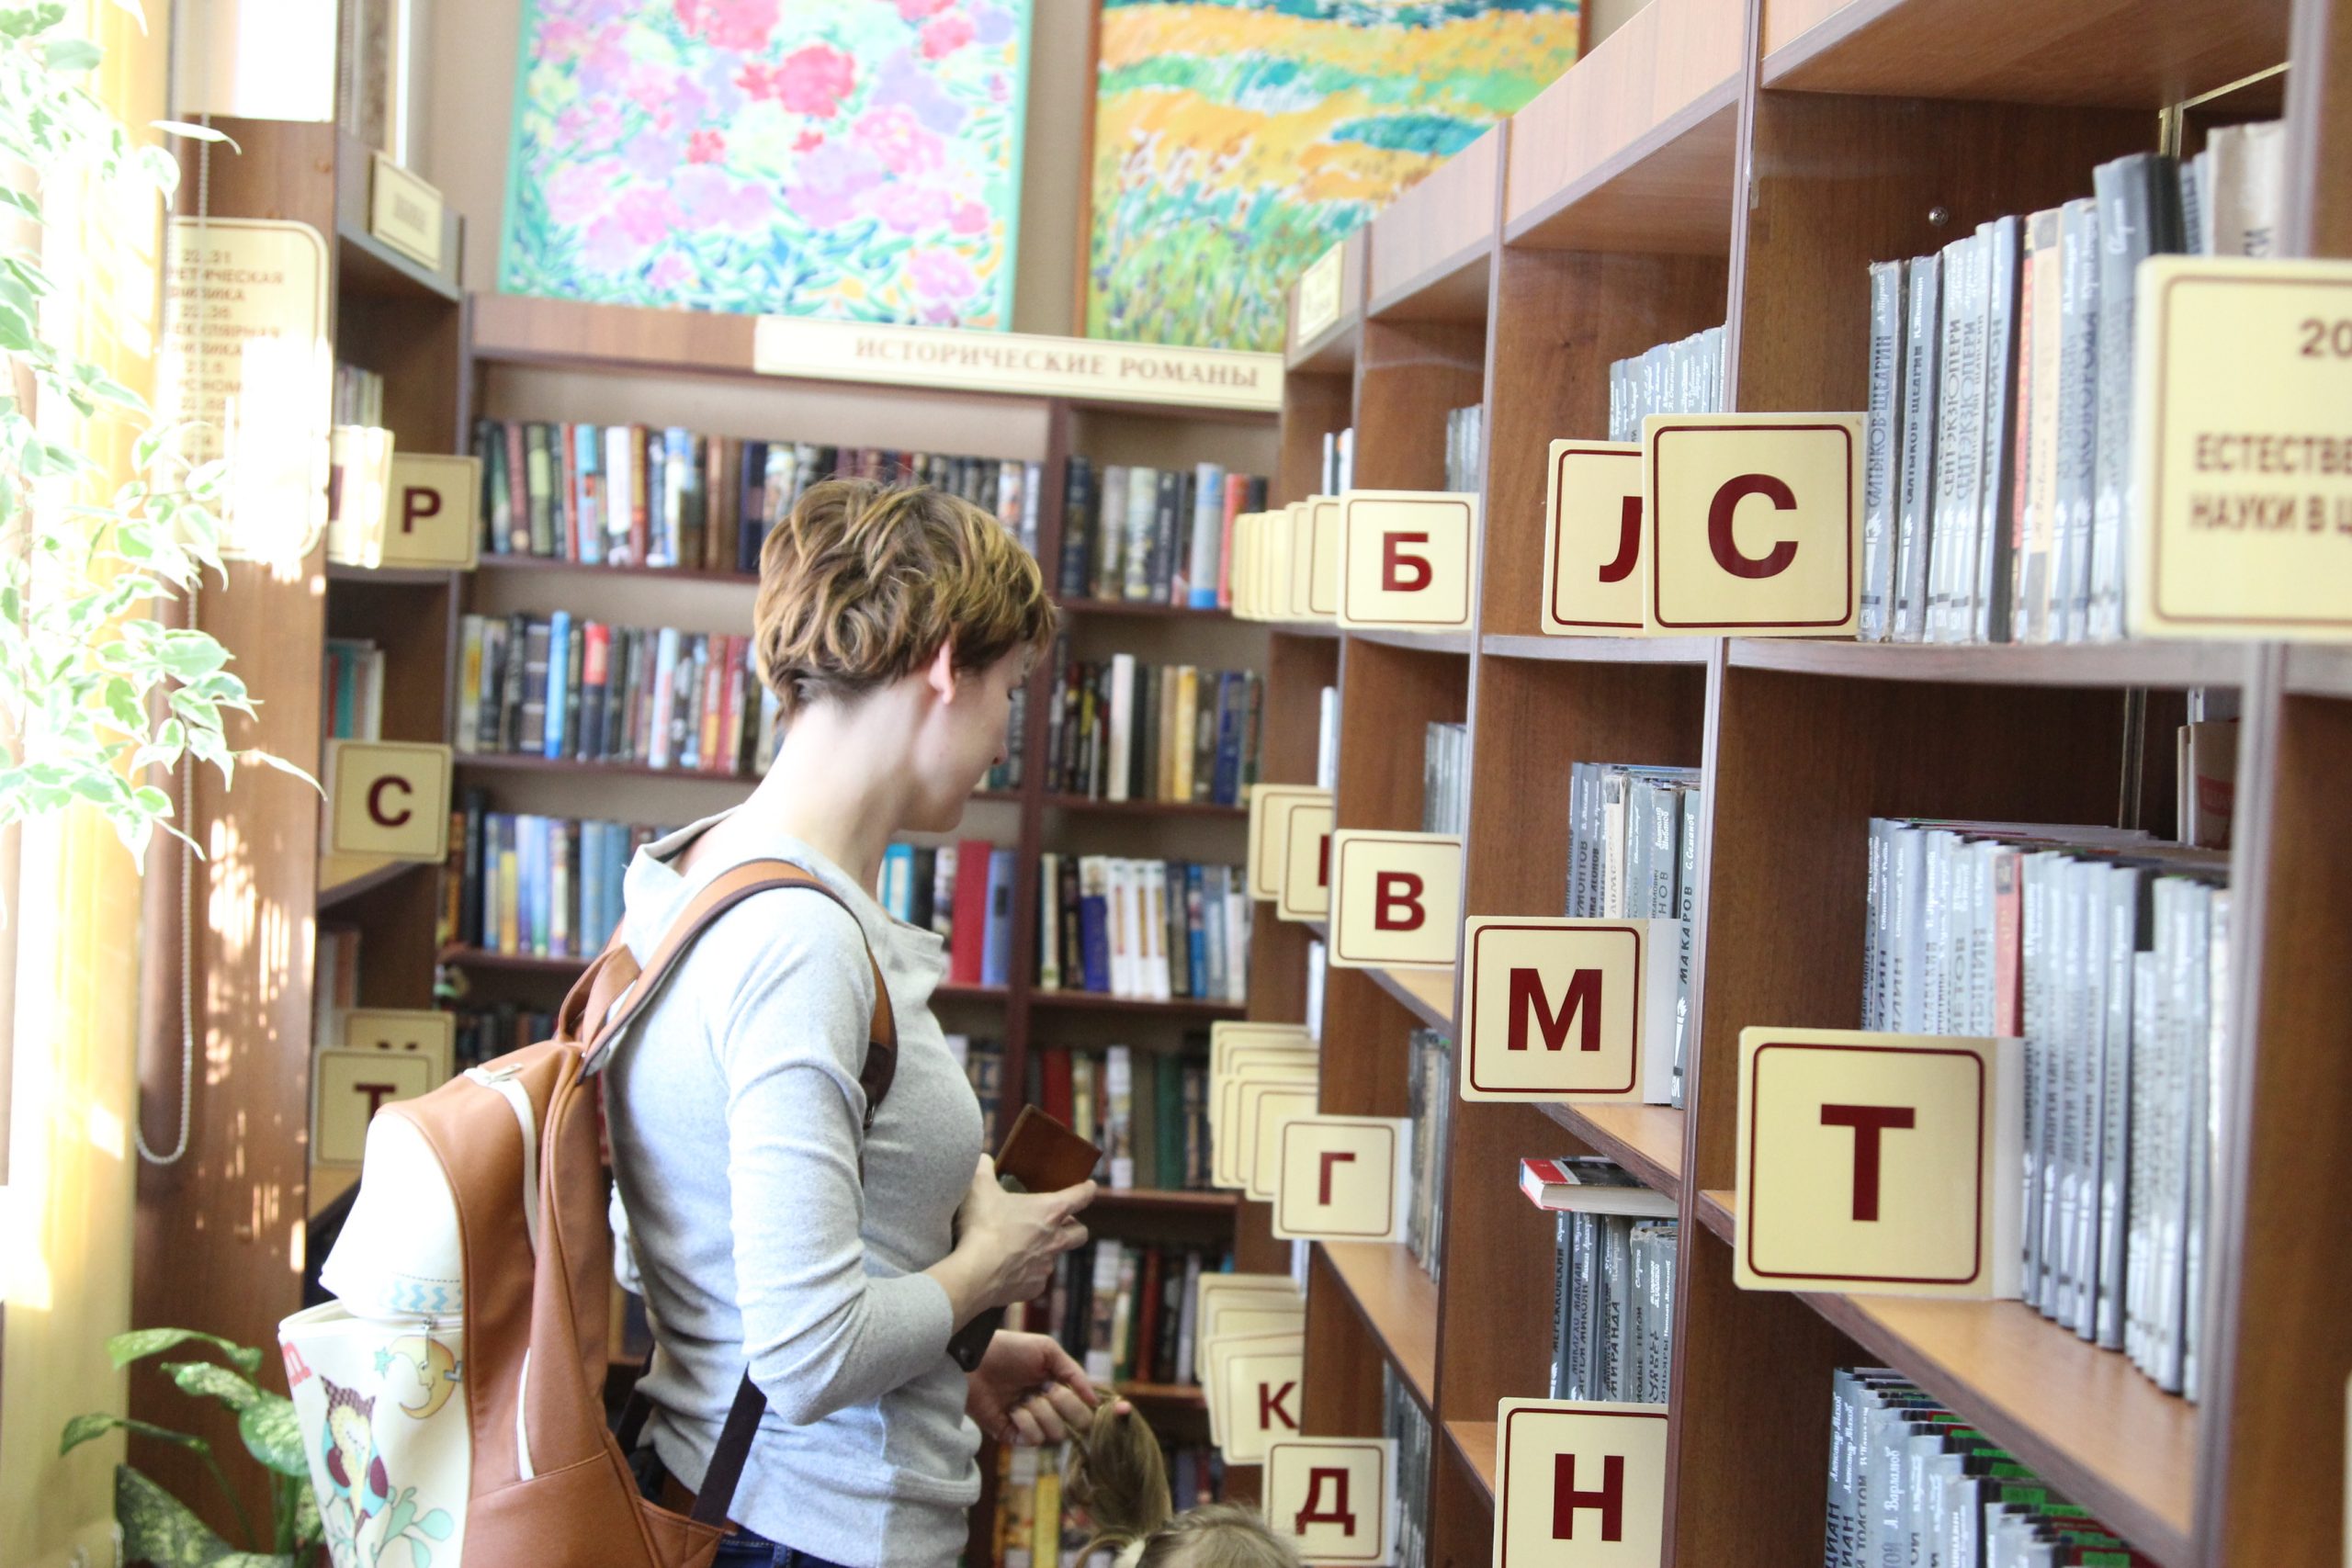 Читатель. Списанные книги. К акции «списанные книги» присоединилась библиотека на Дубнинской.